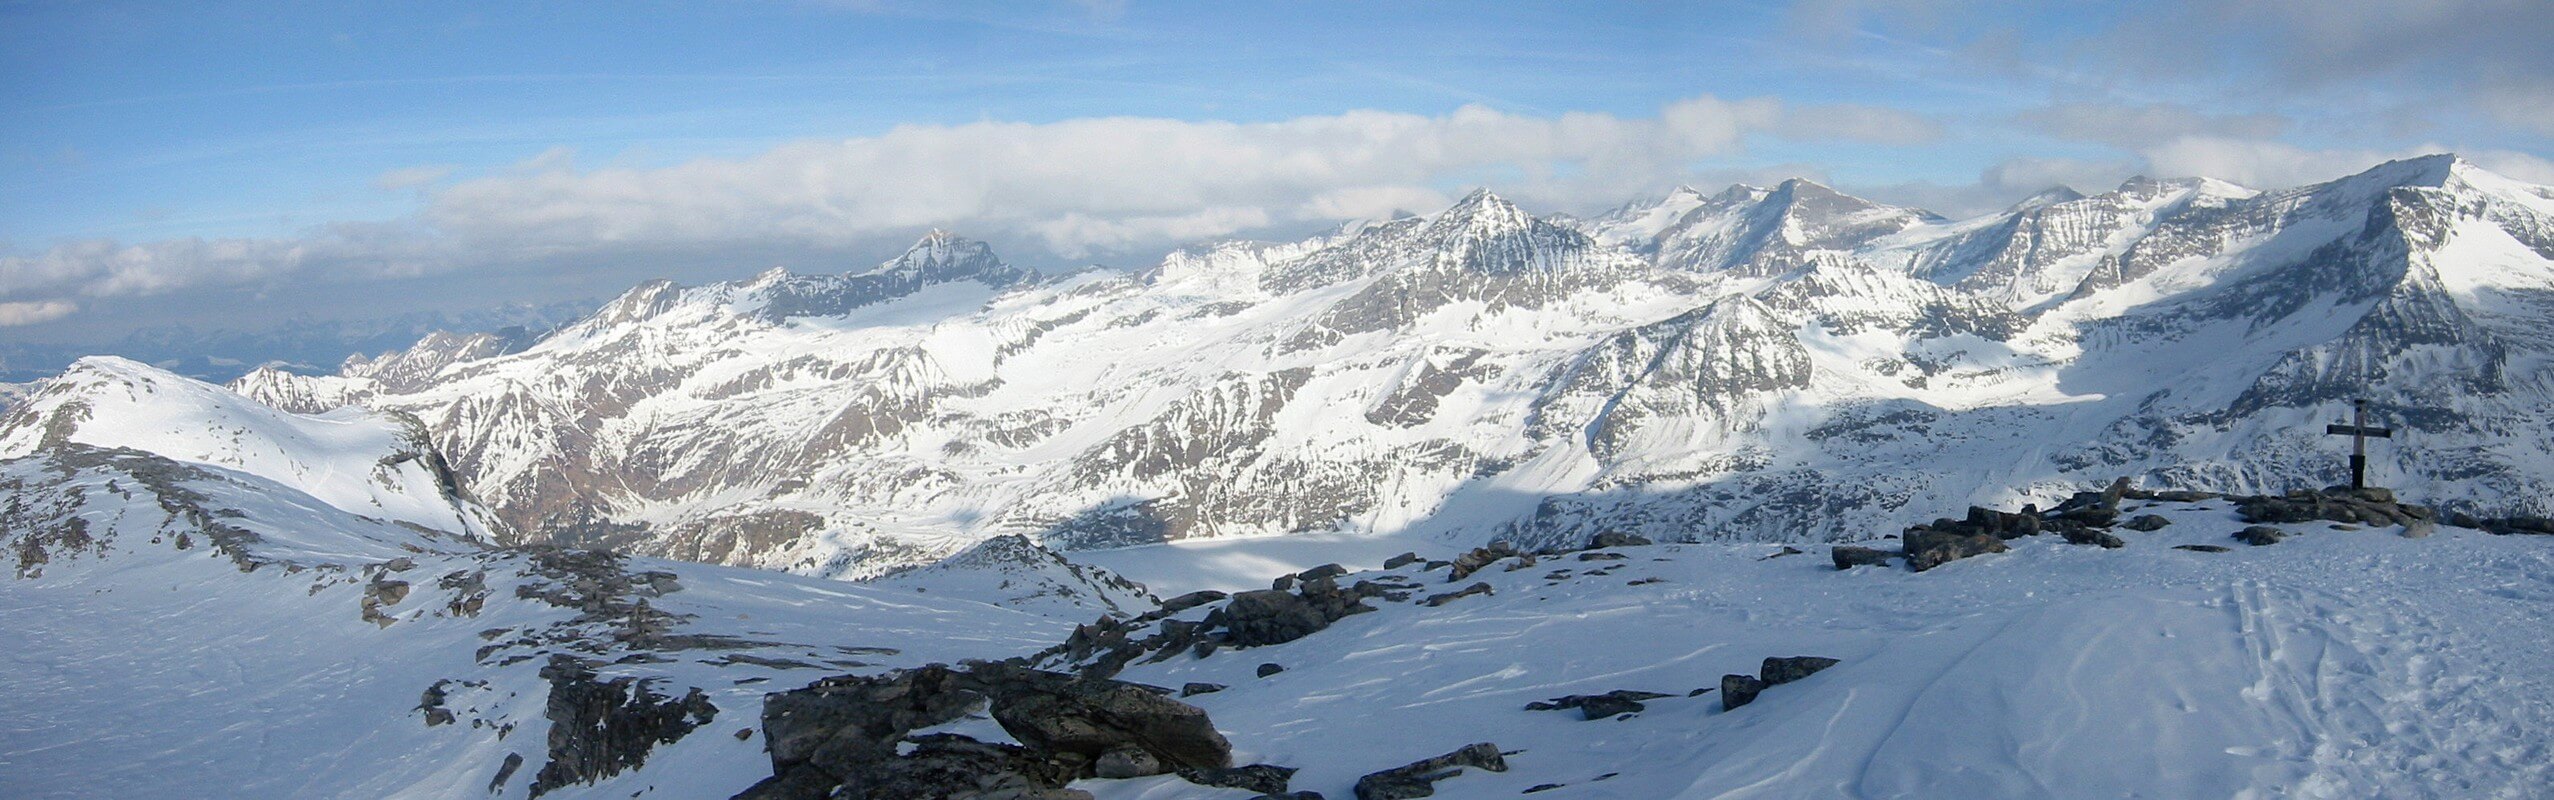 Hoch Fürlegg Granatspitzgruppe - Hohe Tauern Rakousko panorama 16